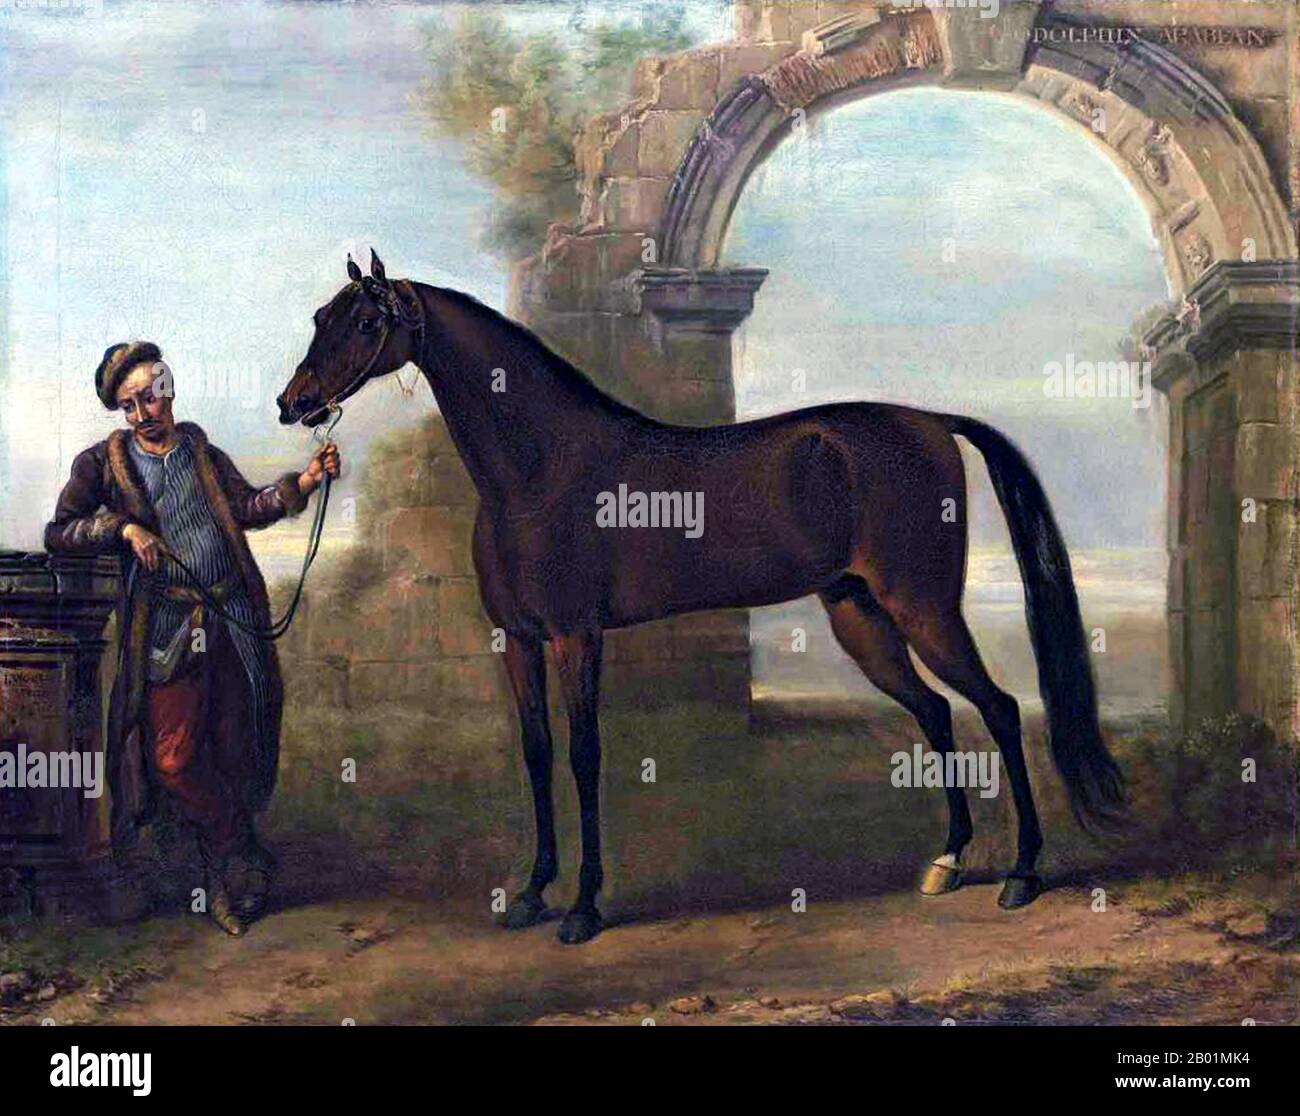 Vereinigtes Königreich: "Der Godolphin Arab, gehalten von einem Bräutigam, in einer Landschaft mit einem Ruinenbogen". Ölgemälde auf Leinwand von John Wootton (ca. 1682-1764), 1731. Der Godolphin Arabian (um 1724–1753), auch bekannt als Godolphin Barb, war ein arabisches Pferd, das einer von drei Hengsten war, die die modernen Vollblutpferdeblutpferdeblutblutblutblutungen begründeten (die anderen beiden sind der Darley Arabian und der Byerley Turk). Er erhielt seinen Namen nach seinem bekanntesten Besitzer Francis Godolphin, 2. Earl of Godolphin. Stockfoto